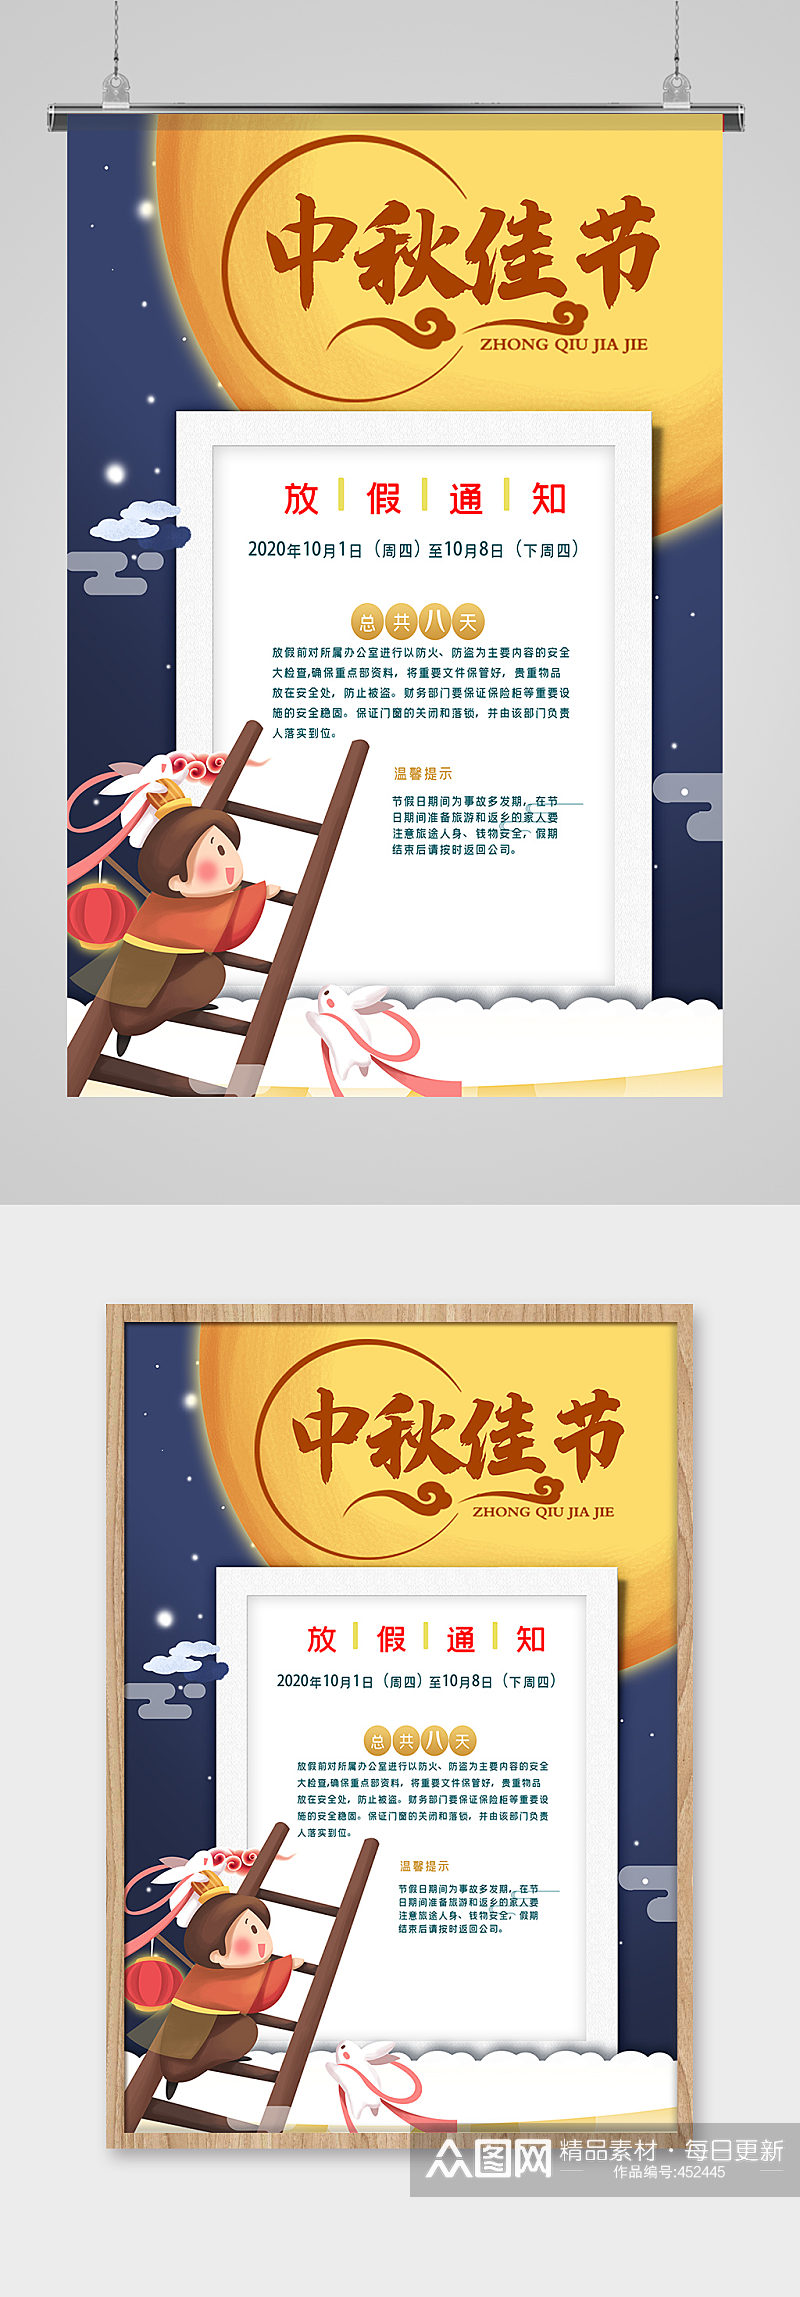 中式创意中秋节放假通知公告海报素材素材